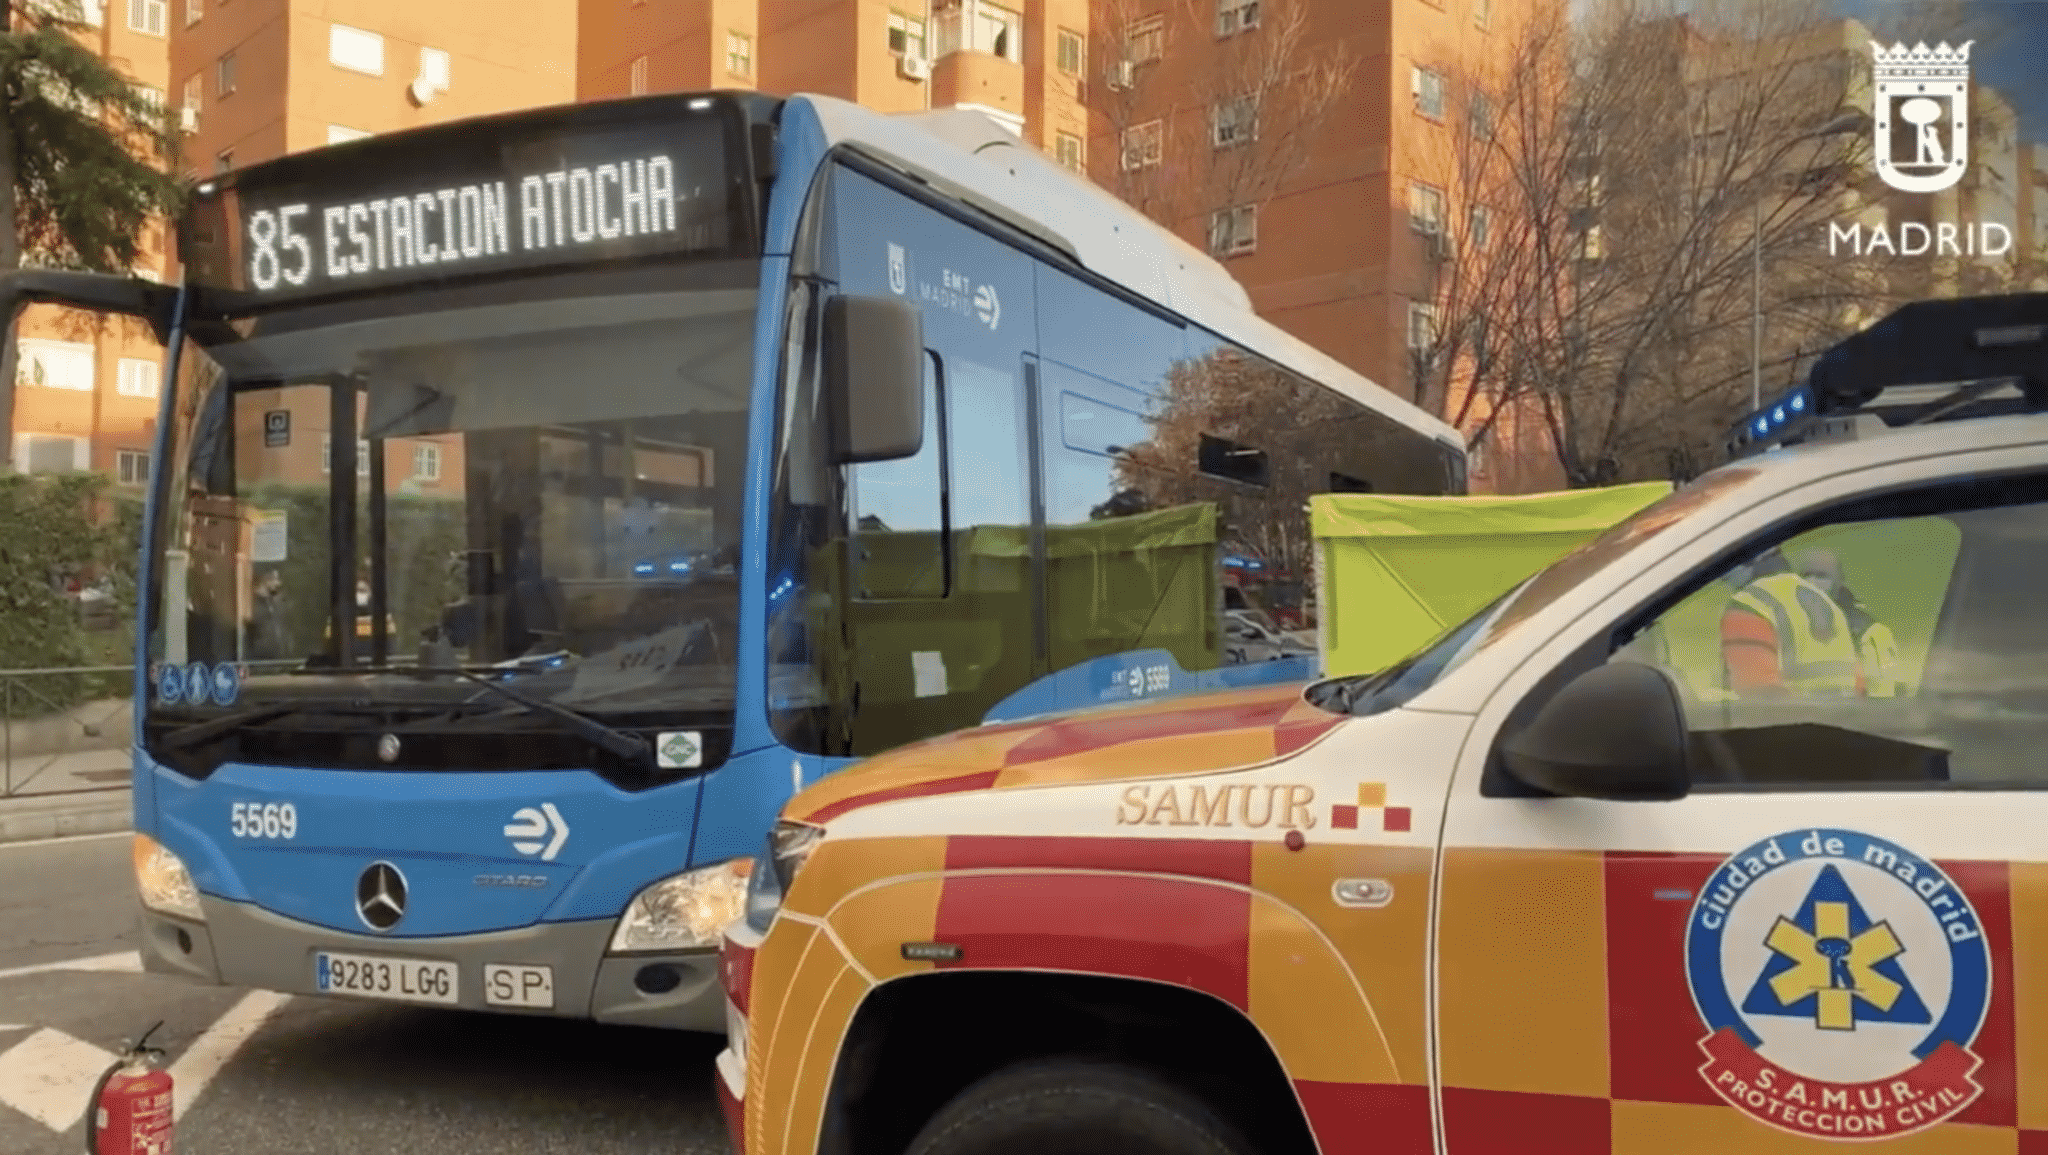 Autobús del accidente y furgoneta del Samur en Madrid